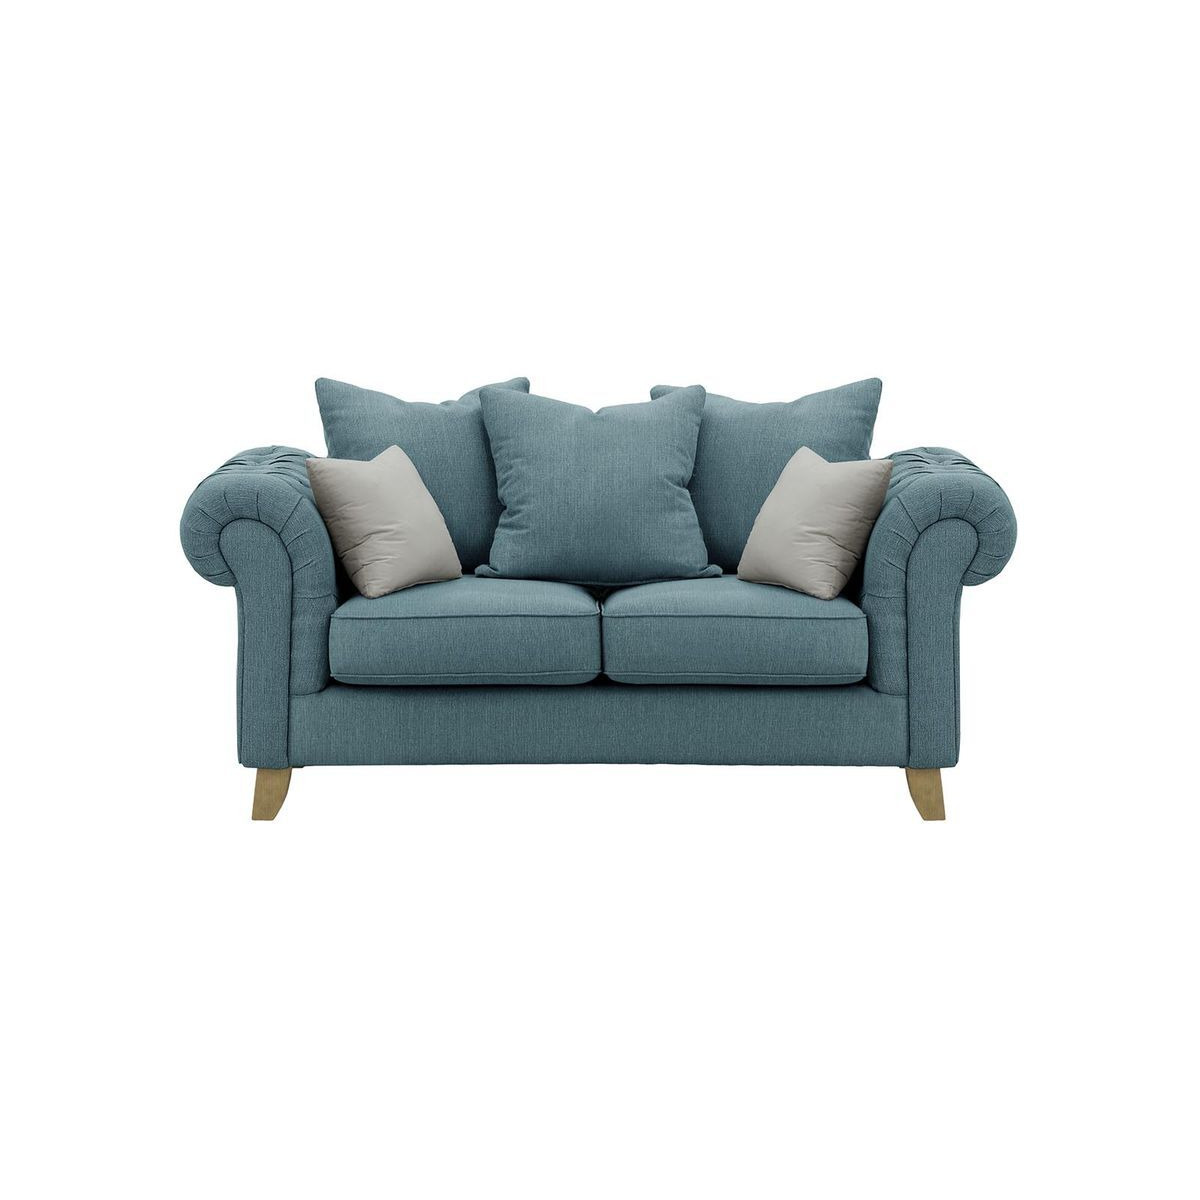 Monza 2 Seater Sofa, Deep blue/Silver, Leg colour: like oak - image 1